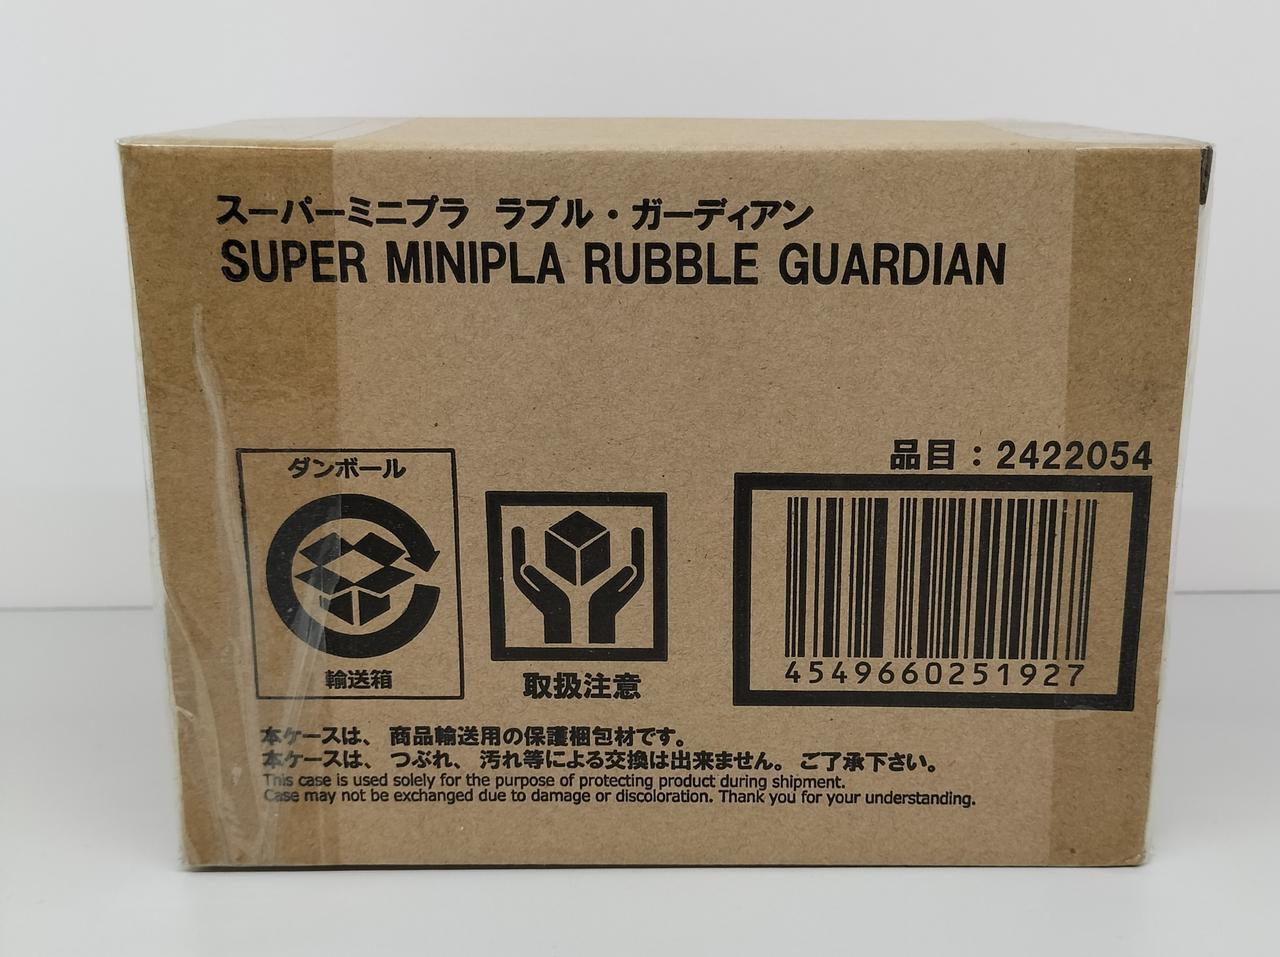 Bandai Giant God Gorg Rubble Guardian Super Mini Plastic plastic model Kit